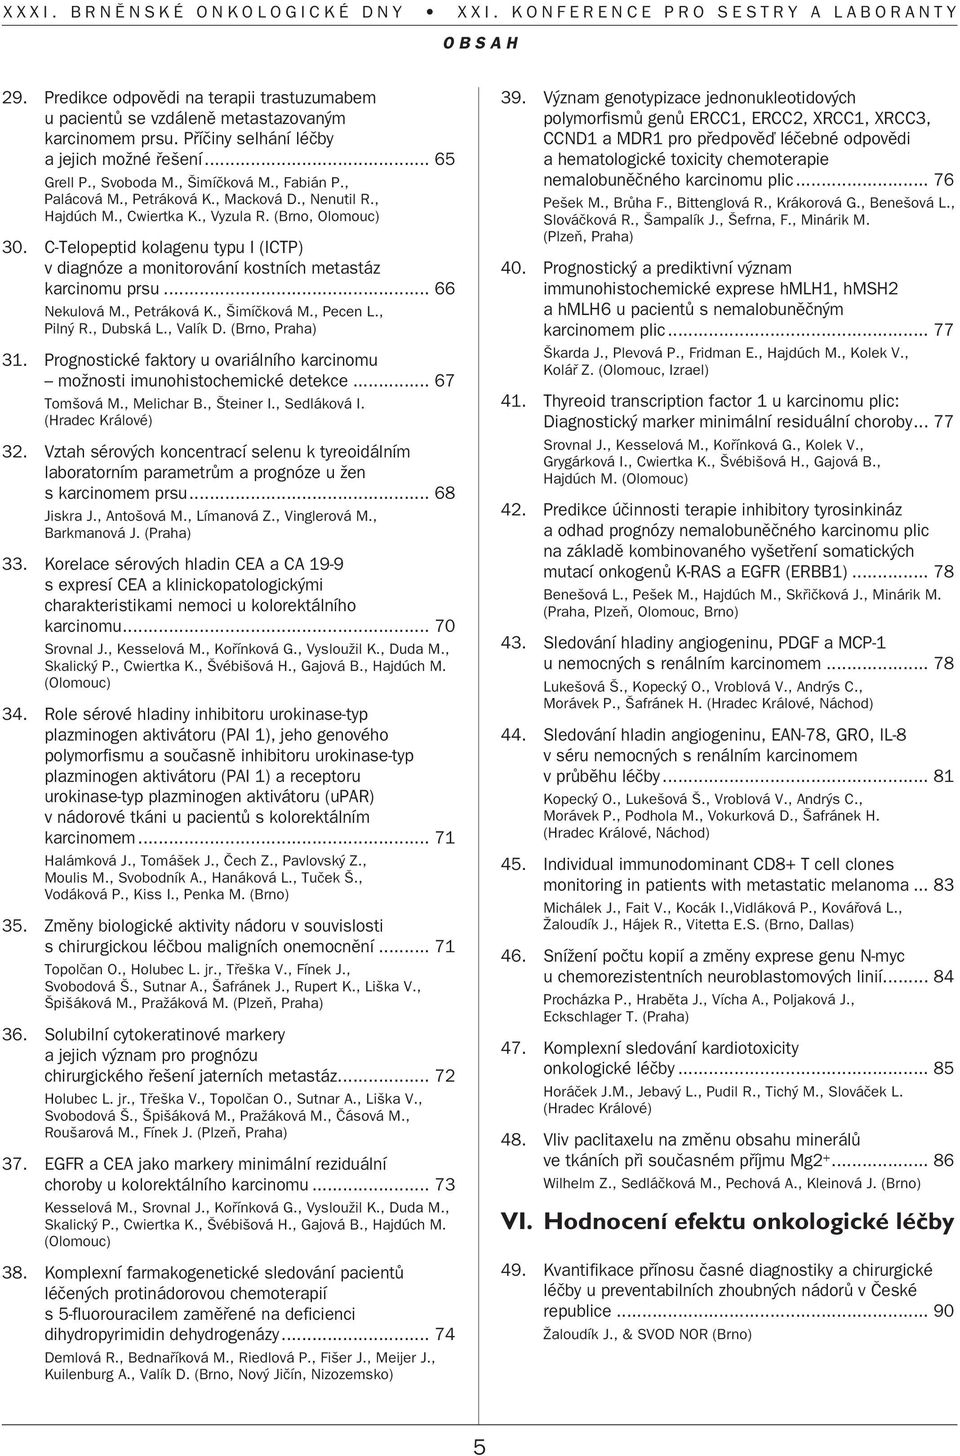 C-Telopeptid kolagenu typu I (ICTP) v diagnóze a monitorování kostních metastáz karcinomu prsu... 66 Nekulová M., Petráková K., imíãková M., Pecen L., Piln R., Dubská L., Valík D. (Brno, Praha) 31.